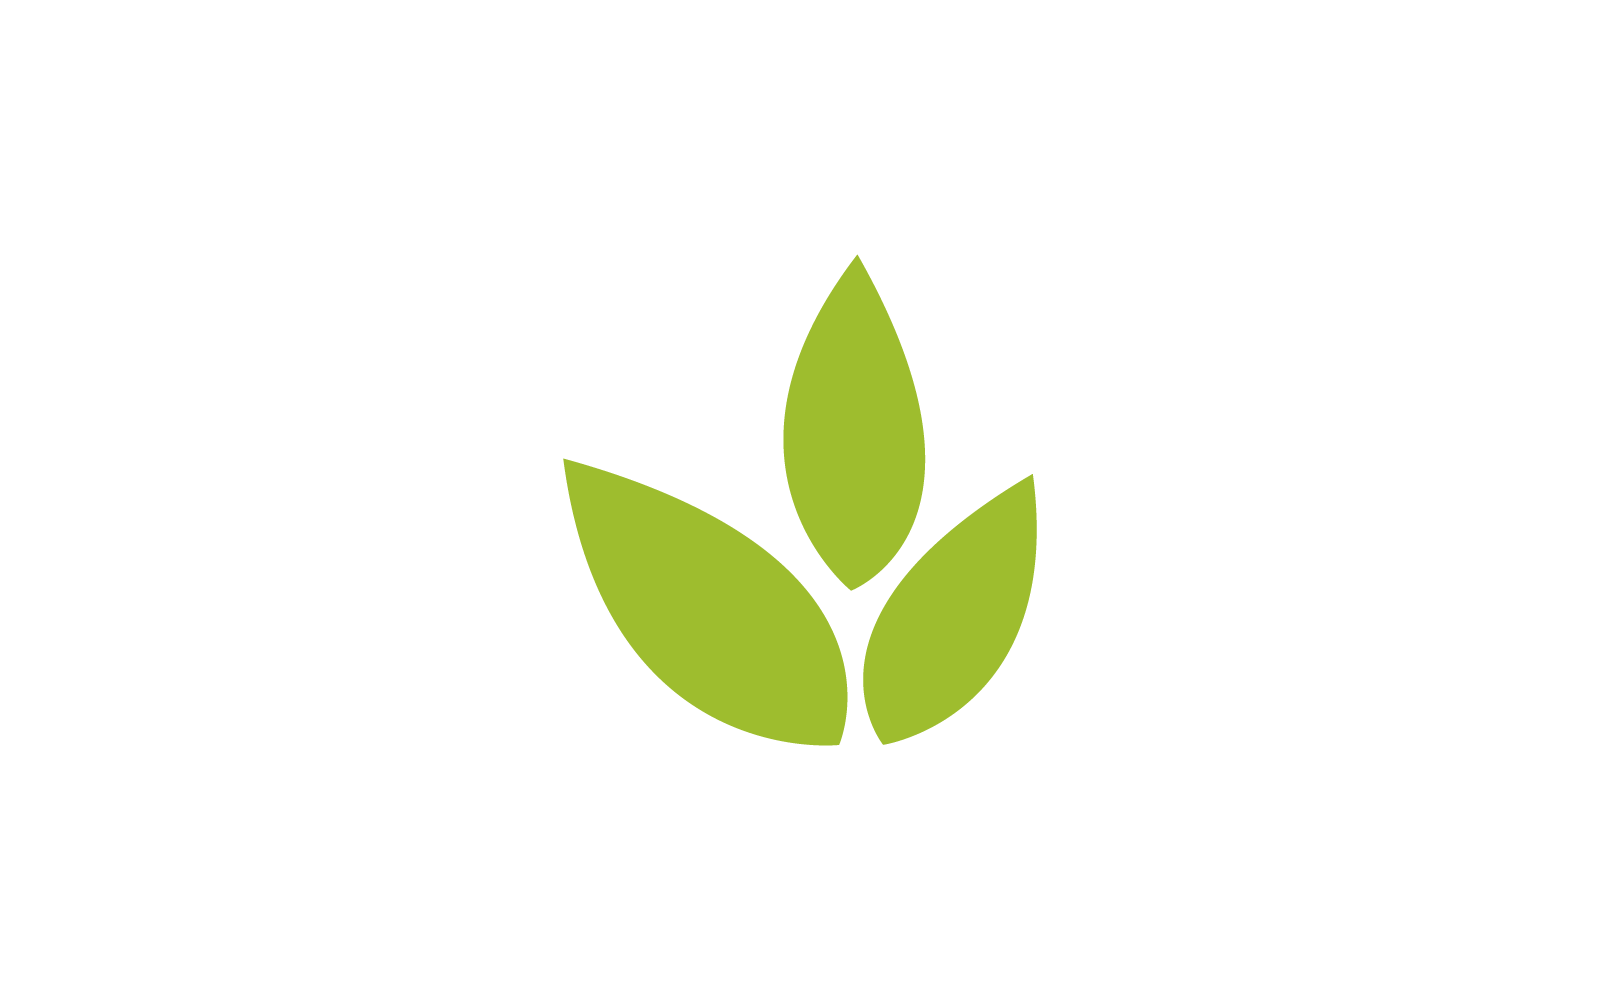 Green leaf nature logo illustration design